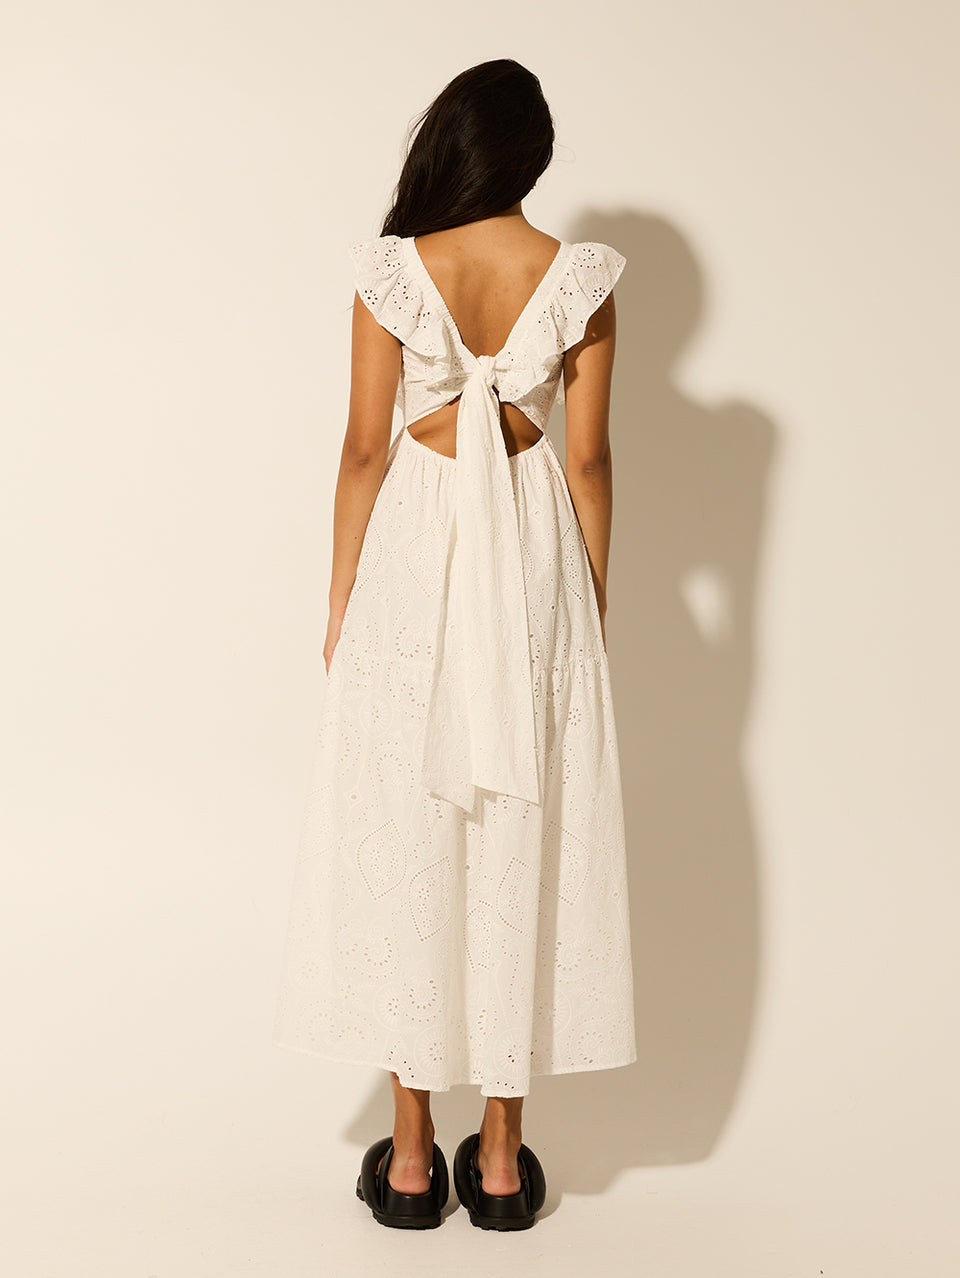 Clove Midi Dress KIVARI | Model wears white embroidered midi dress back view